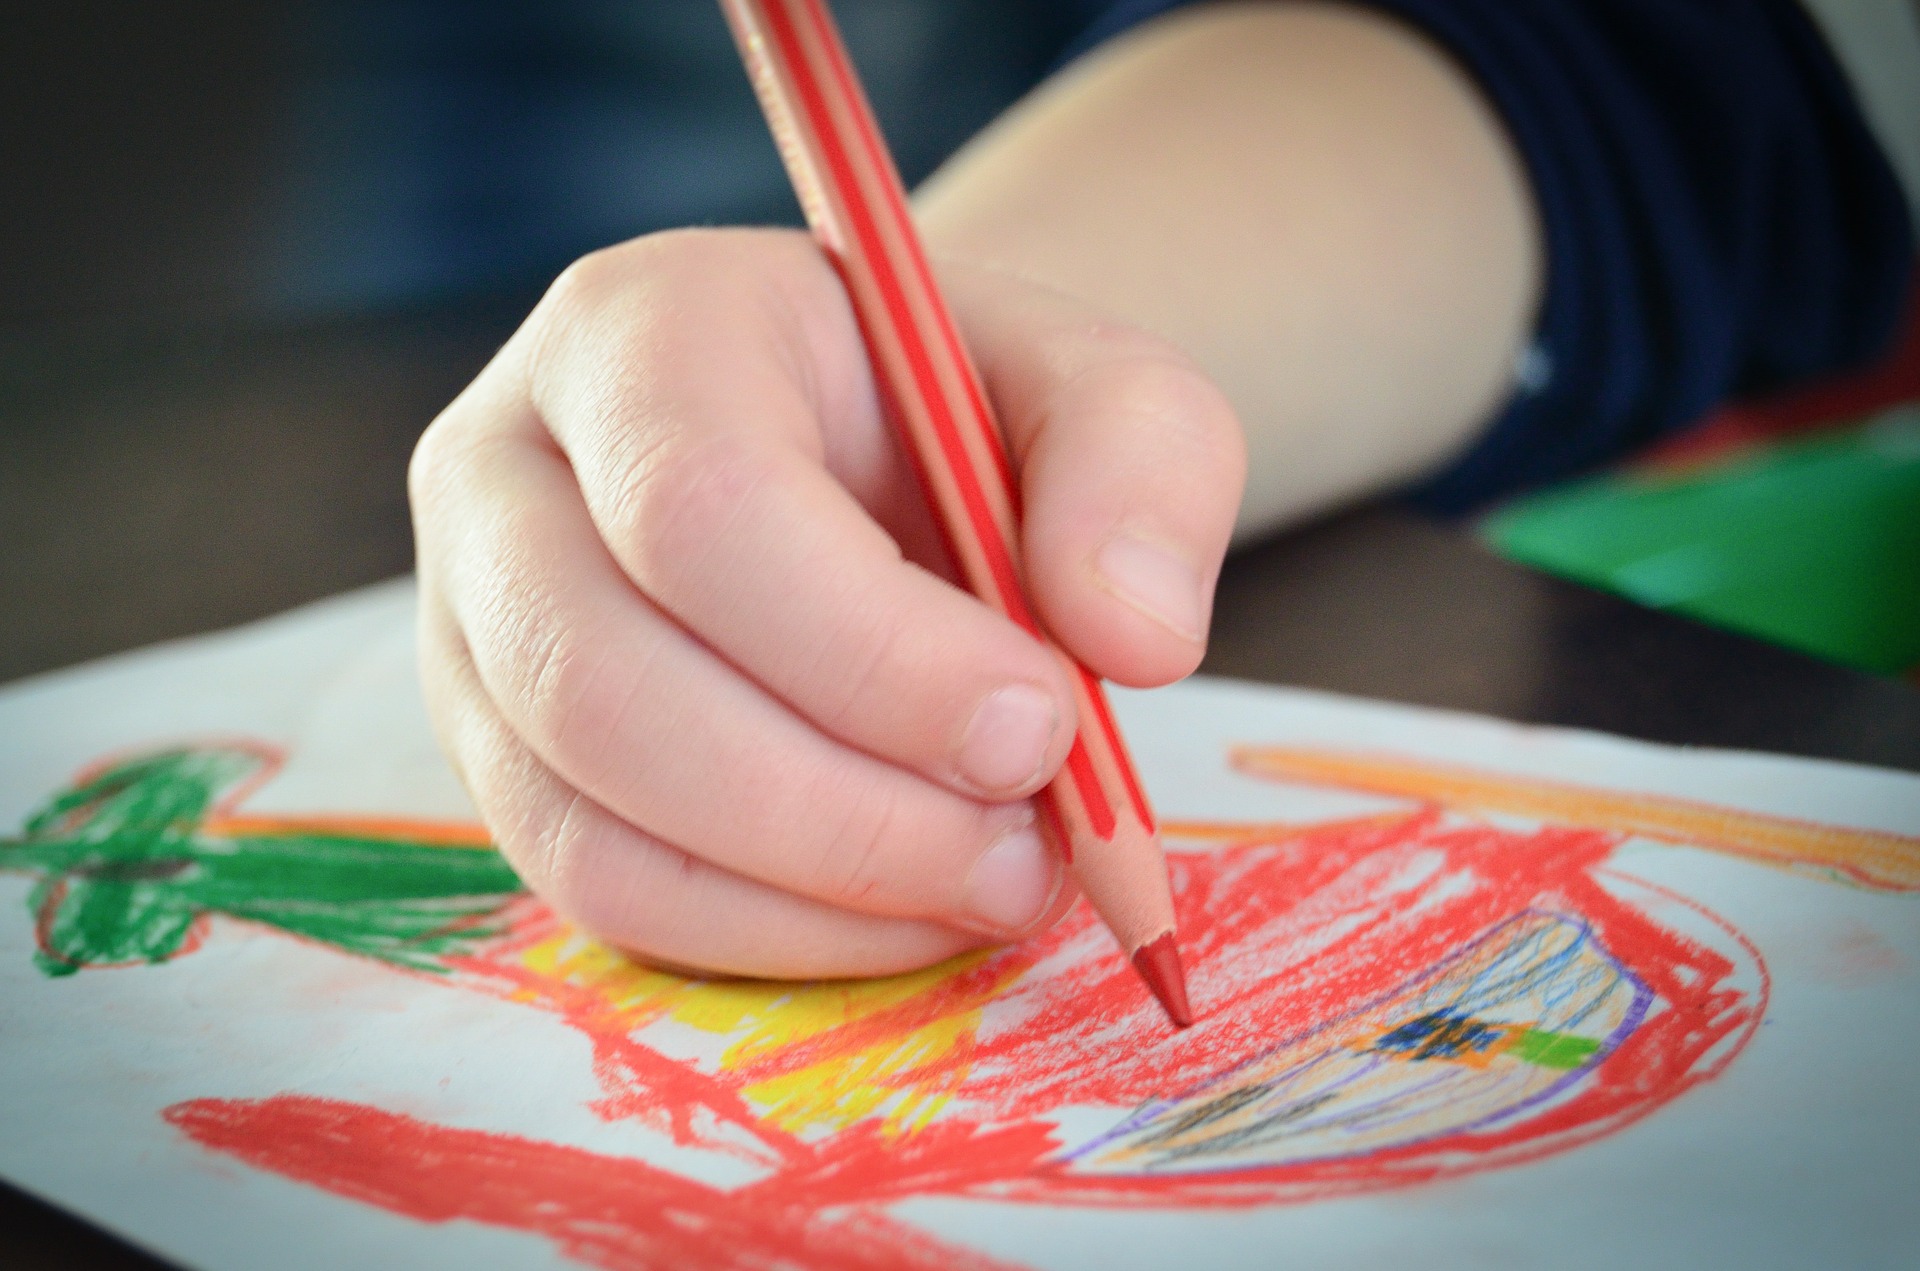 Impugnatura della matita - Interpretiamo il disegno dei bambini